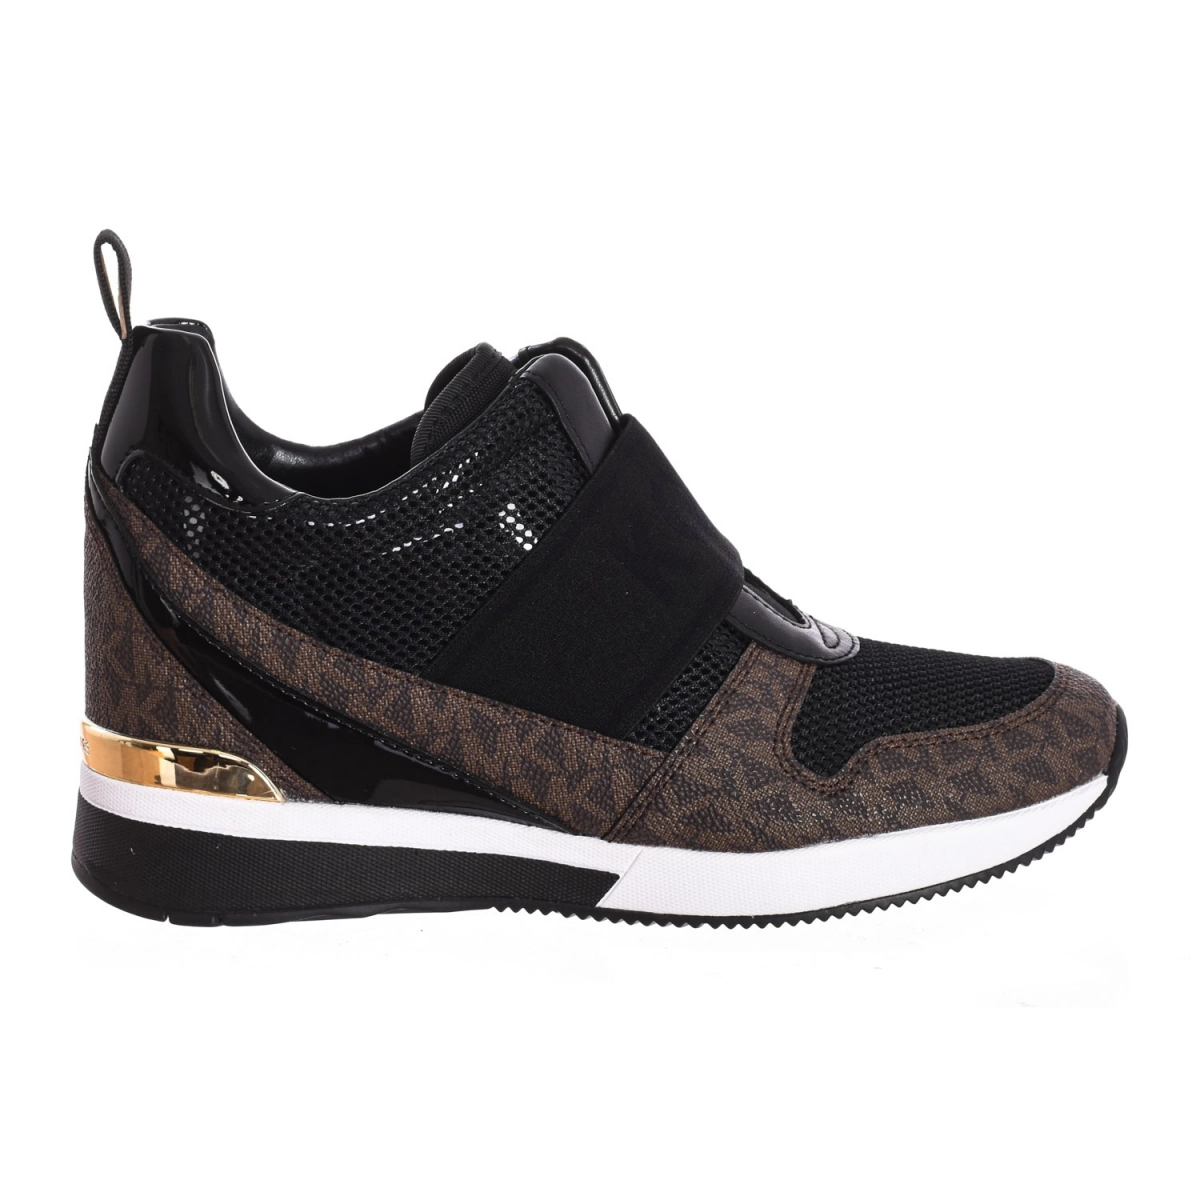 Zapatilla Sneaker Maven sin cordones con cuero Michael Kors F2MVFP2A mujer Talla: 39 Color: Negro F2MVFP2A-BLACK.39